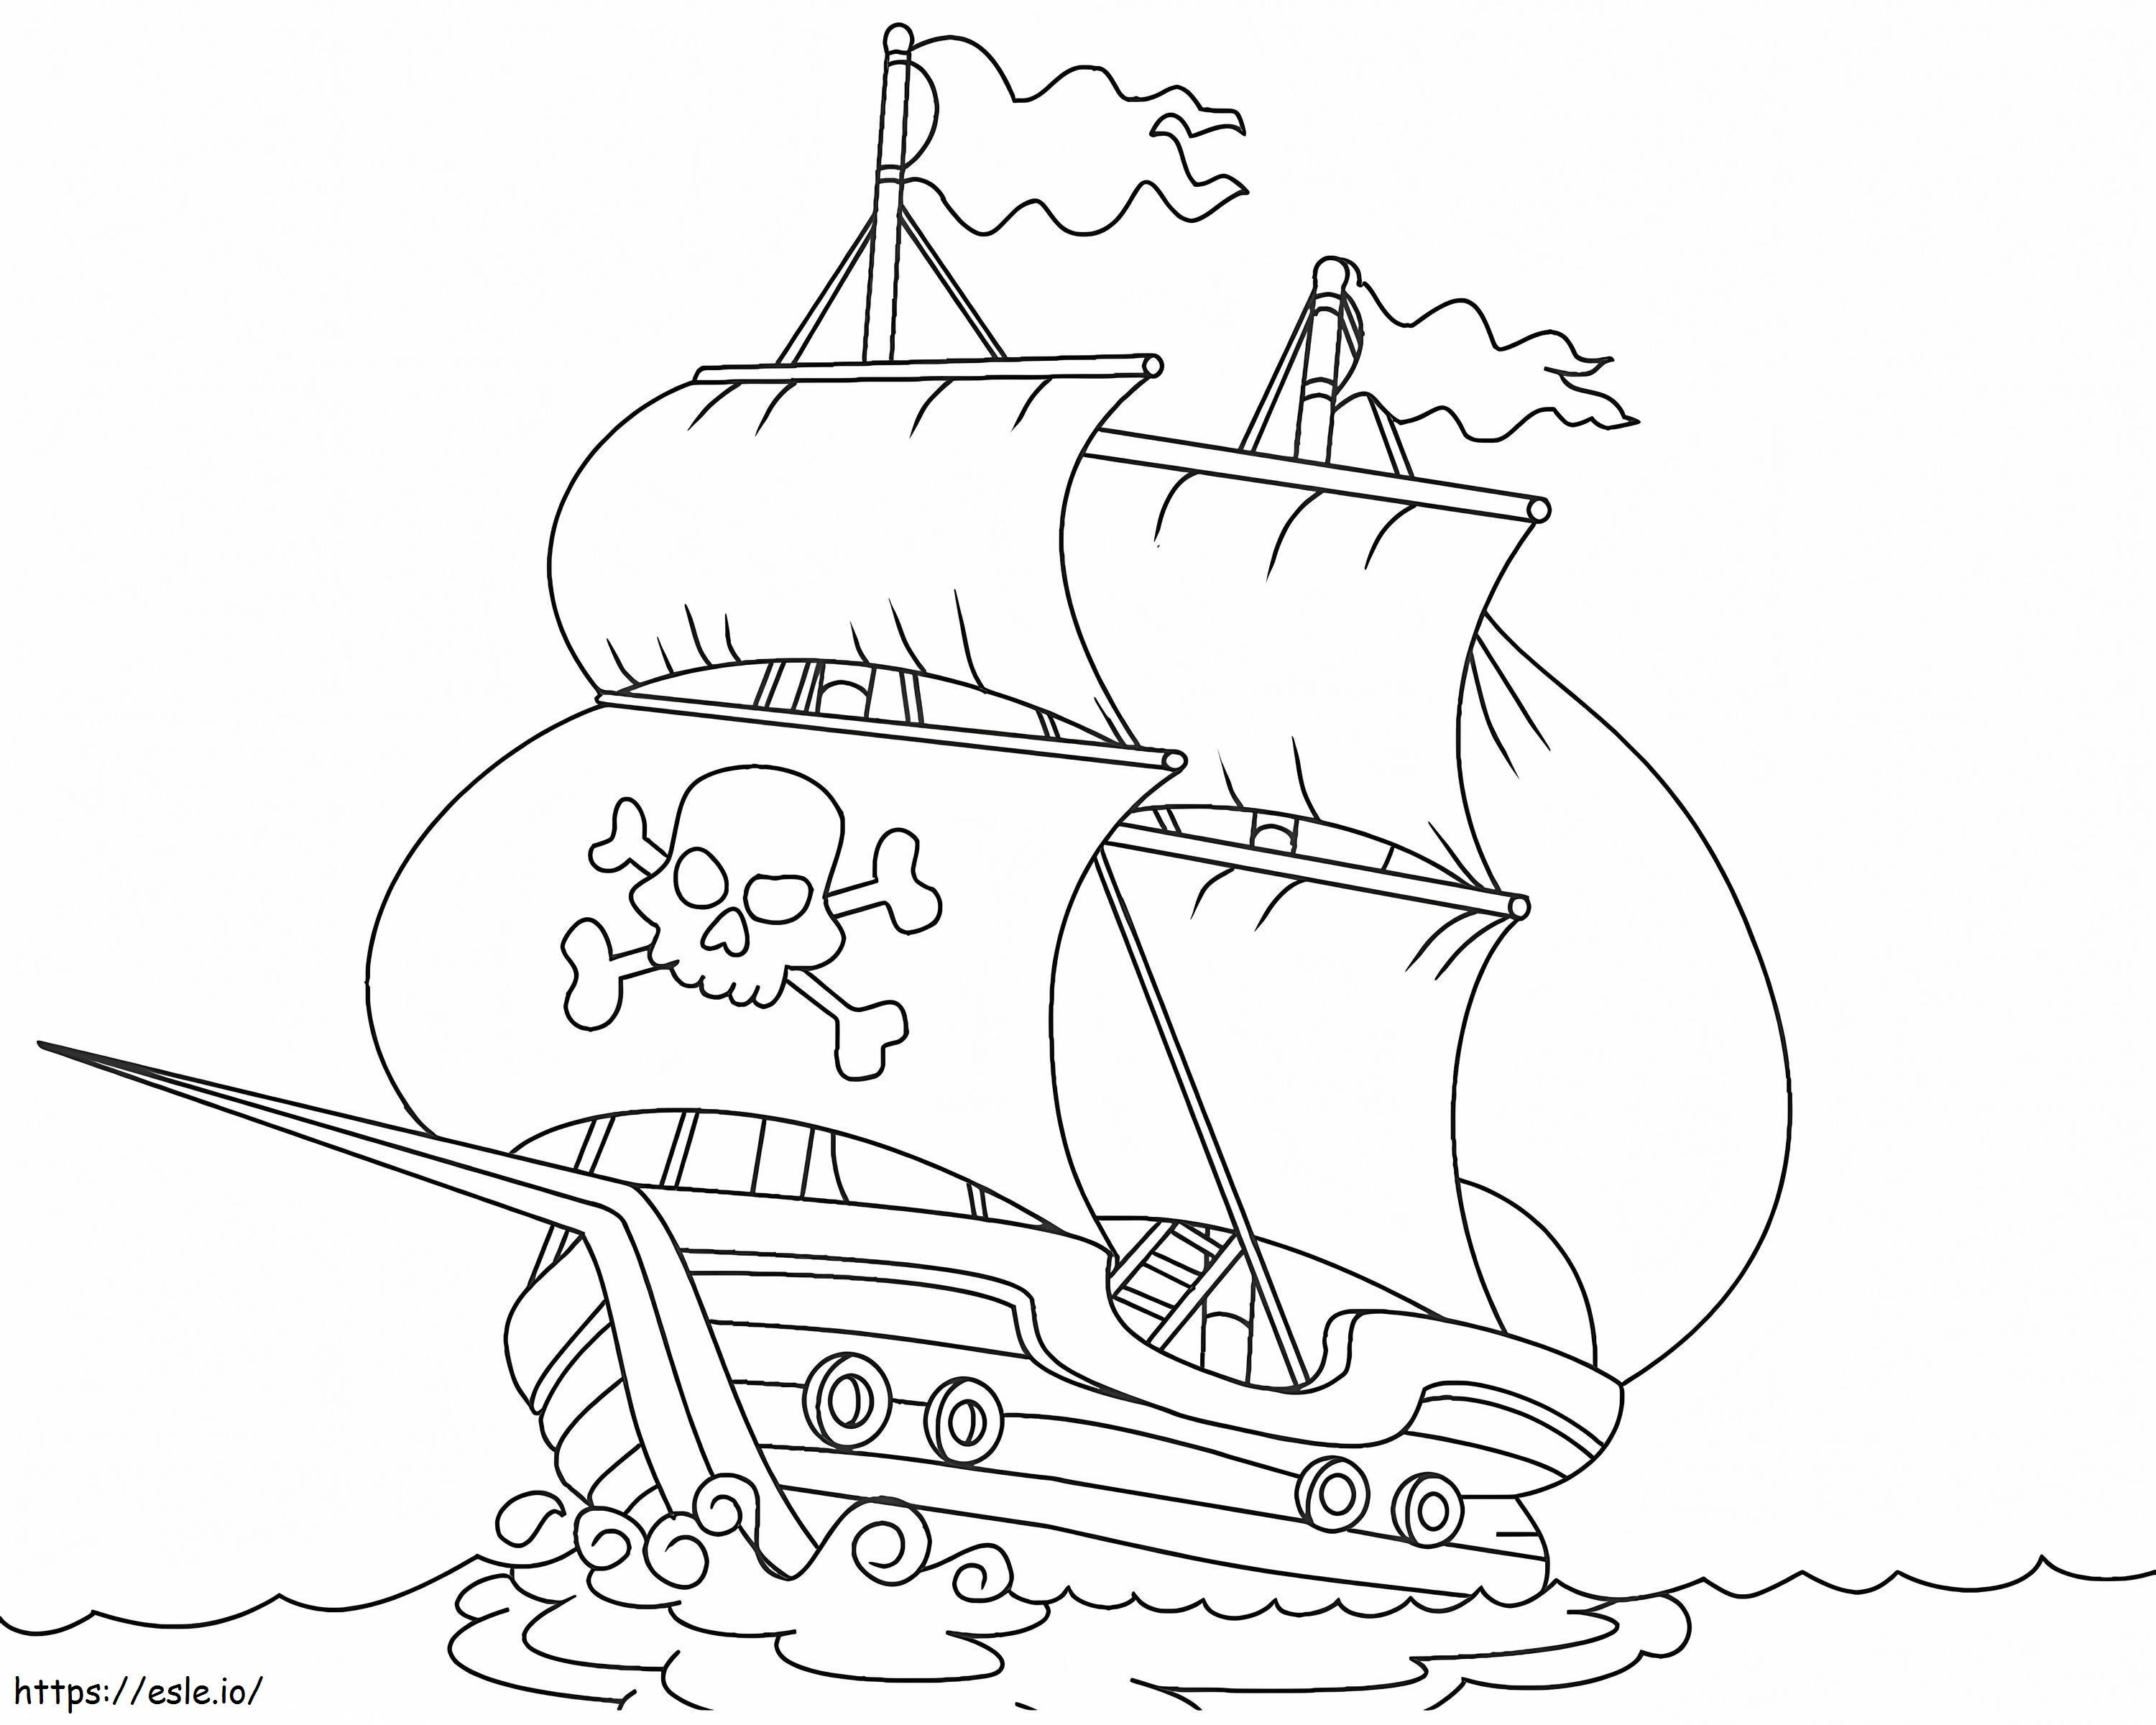 Ausmalbild: Großes Piratenschiff ausmalbilder